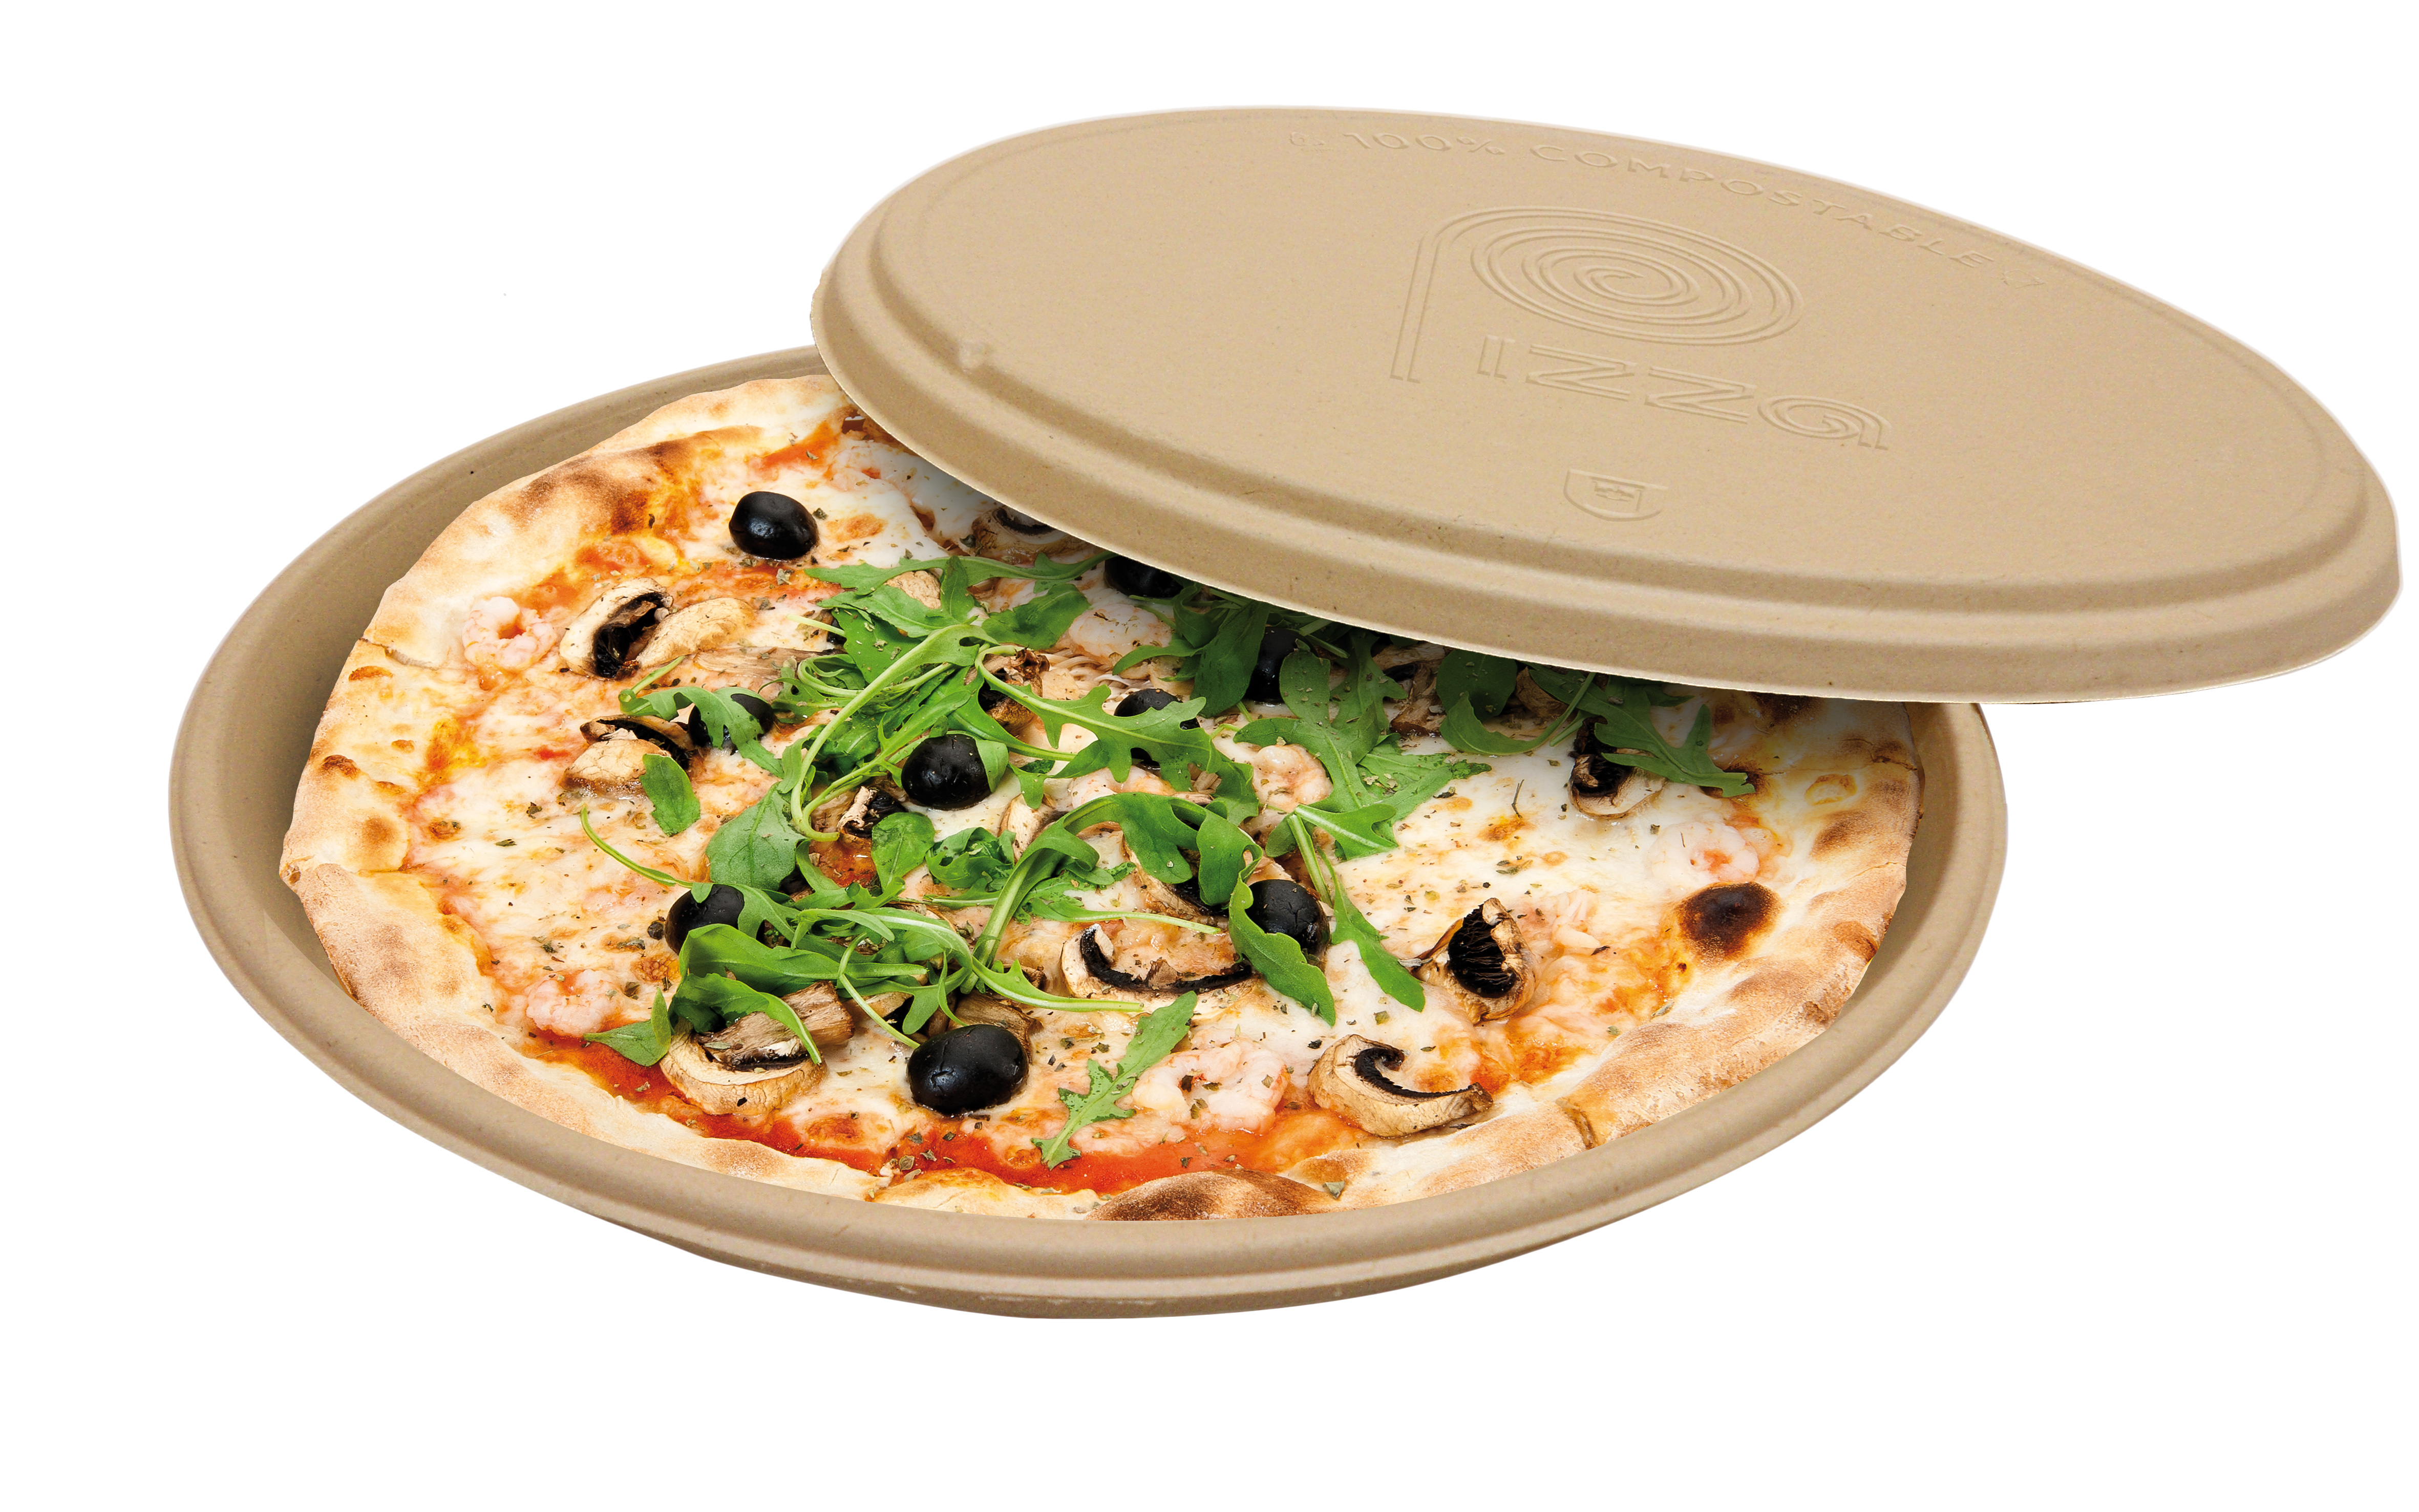 Perché le scatole per pizza sono quadrate se le pizze sono rotonde? –  García de Pou's Blog